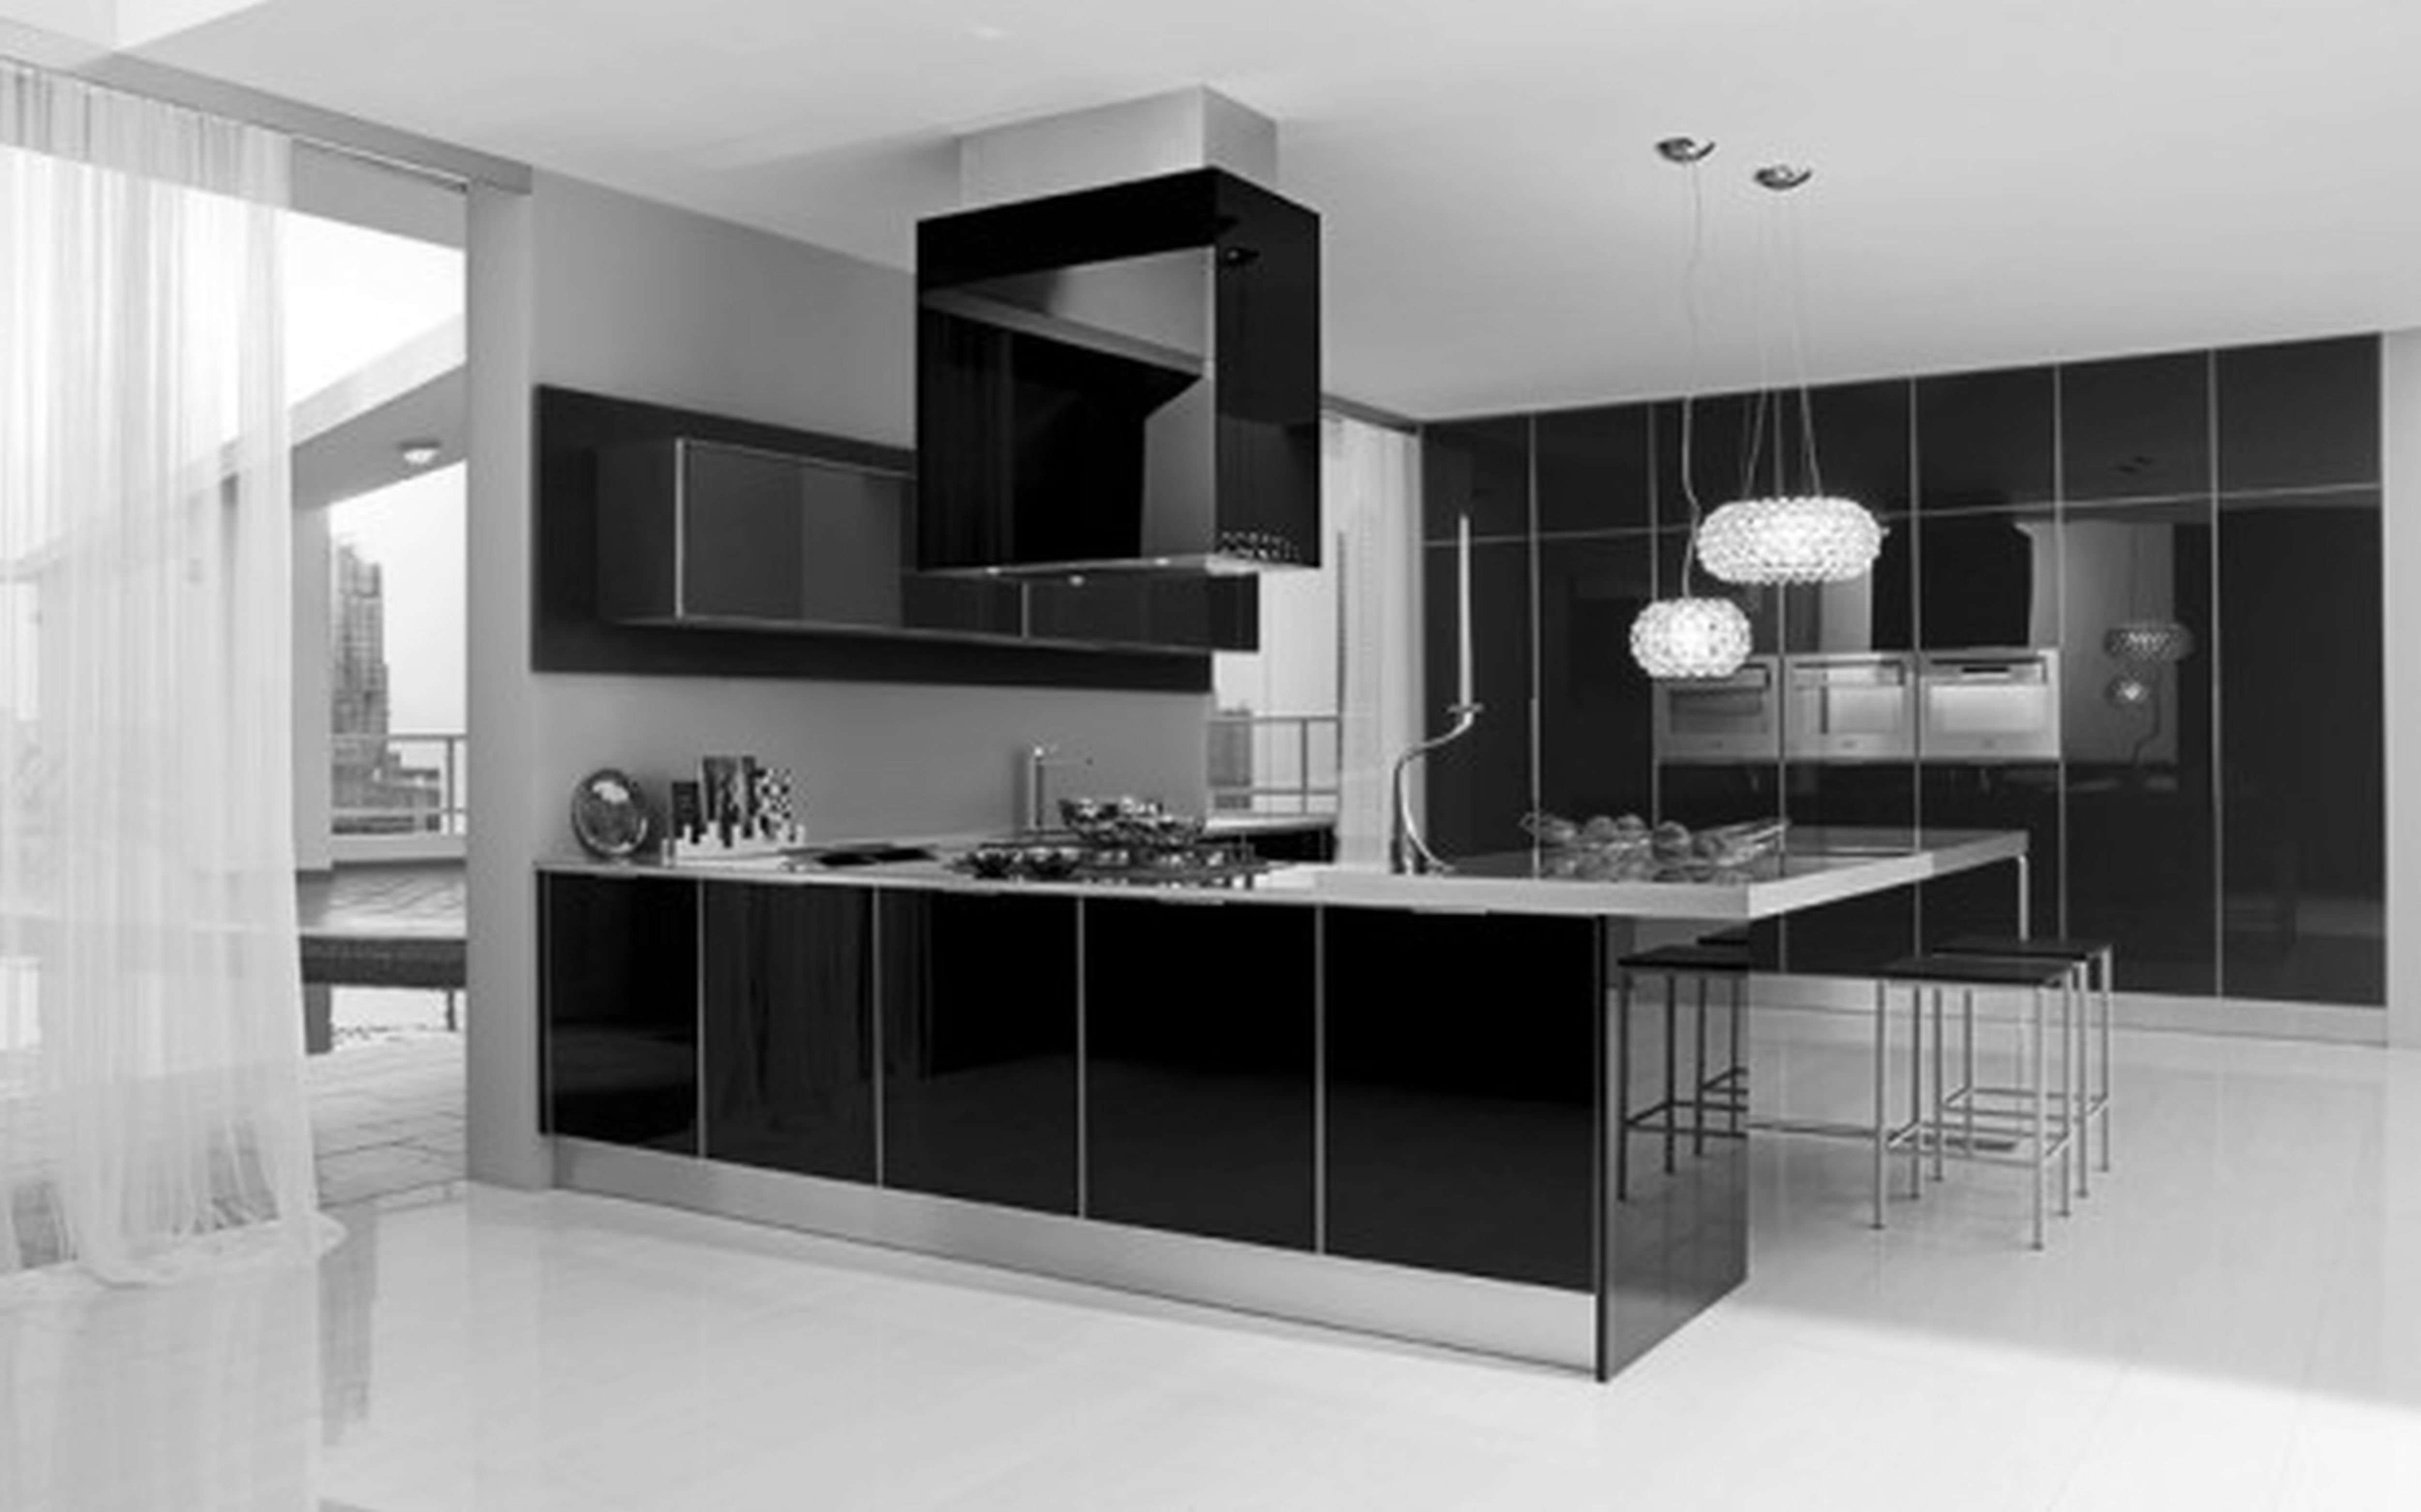 30 Monochrome Kitchen Design Ideas – The WoW Style